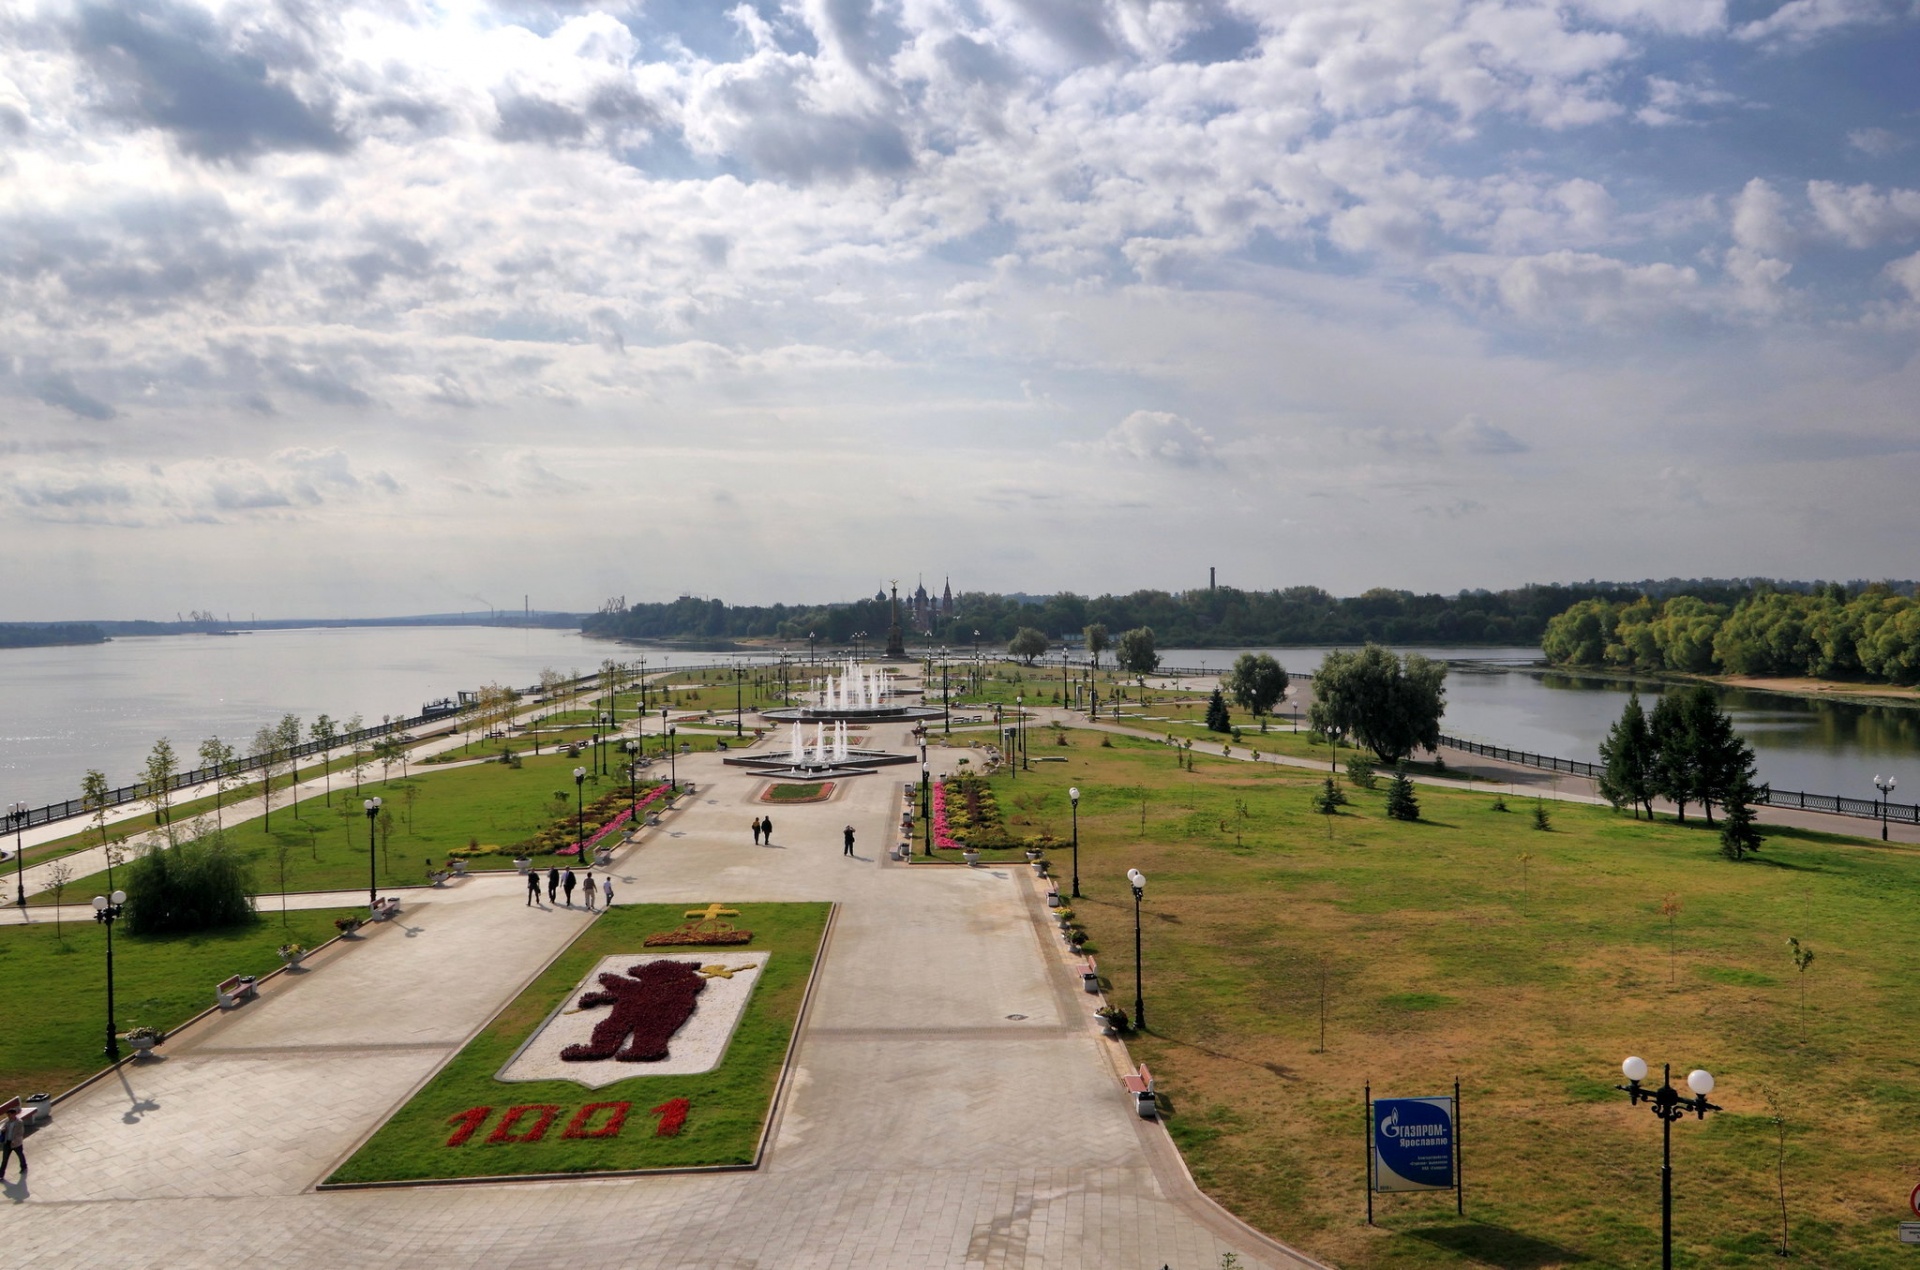 Ярославль. Место впадения реки Которосль в Волгу © Alexxx Malev / flickr